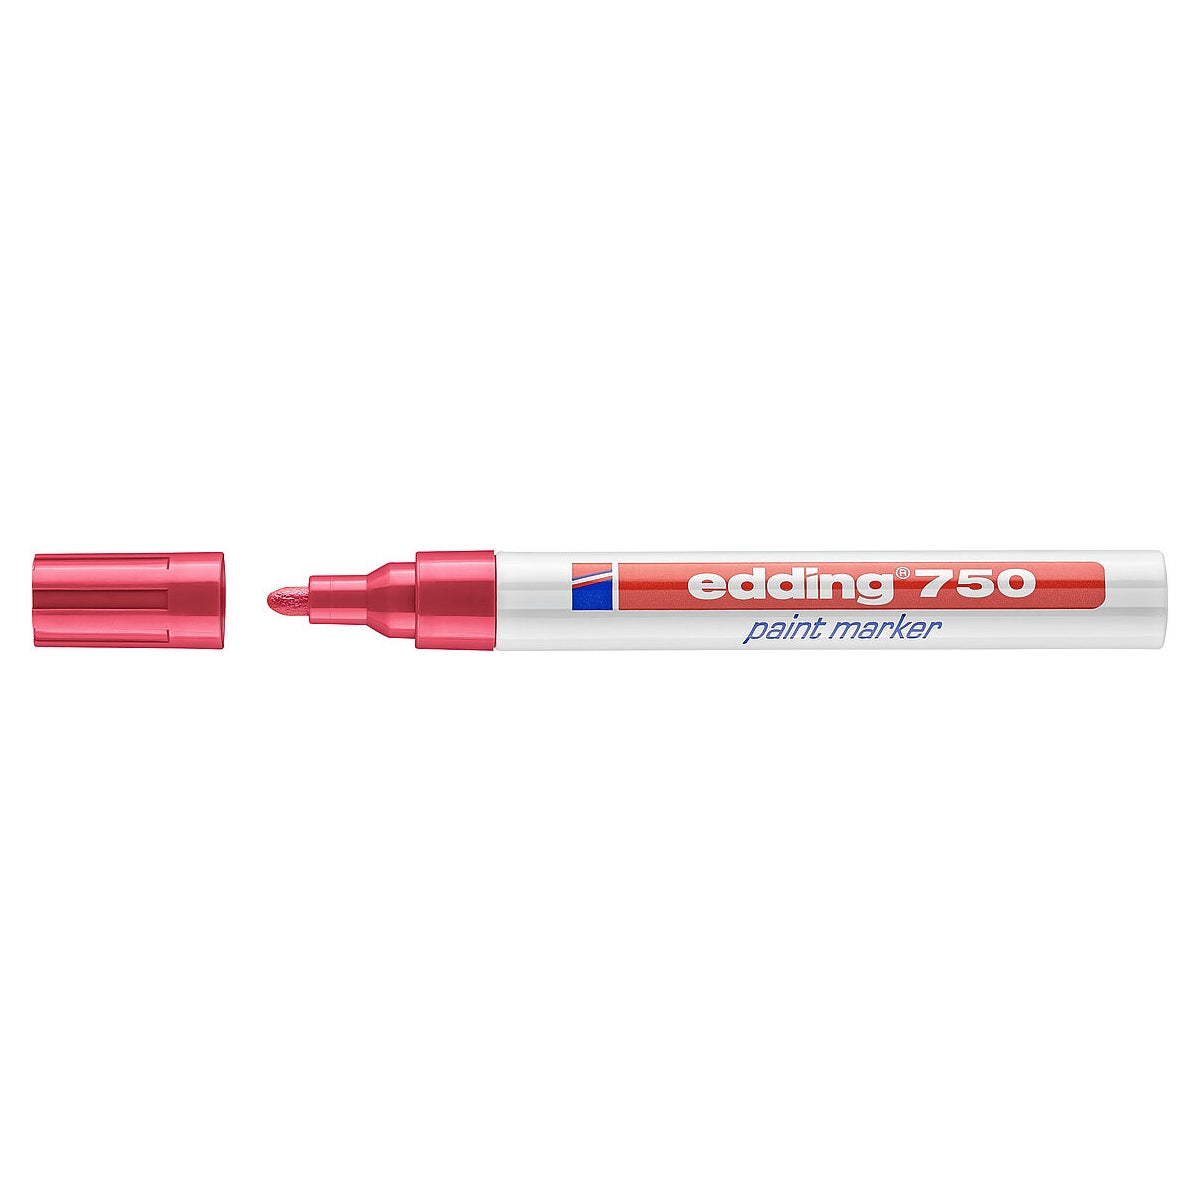 edding 750 Paint Marker, 2-4mm Bullet Tip, Red